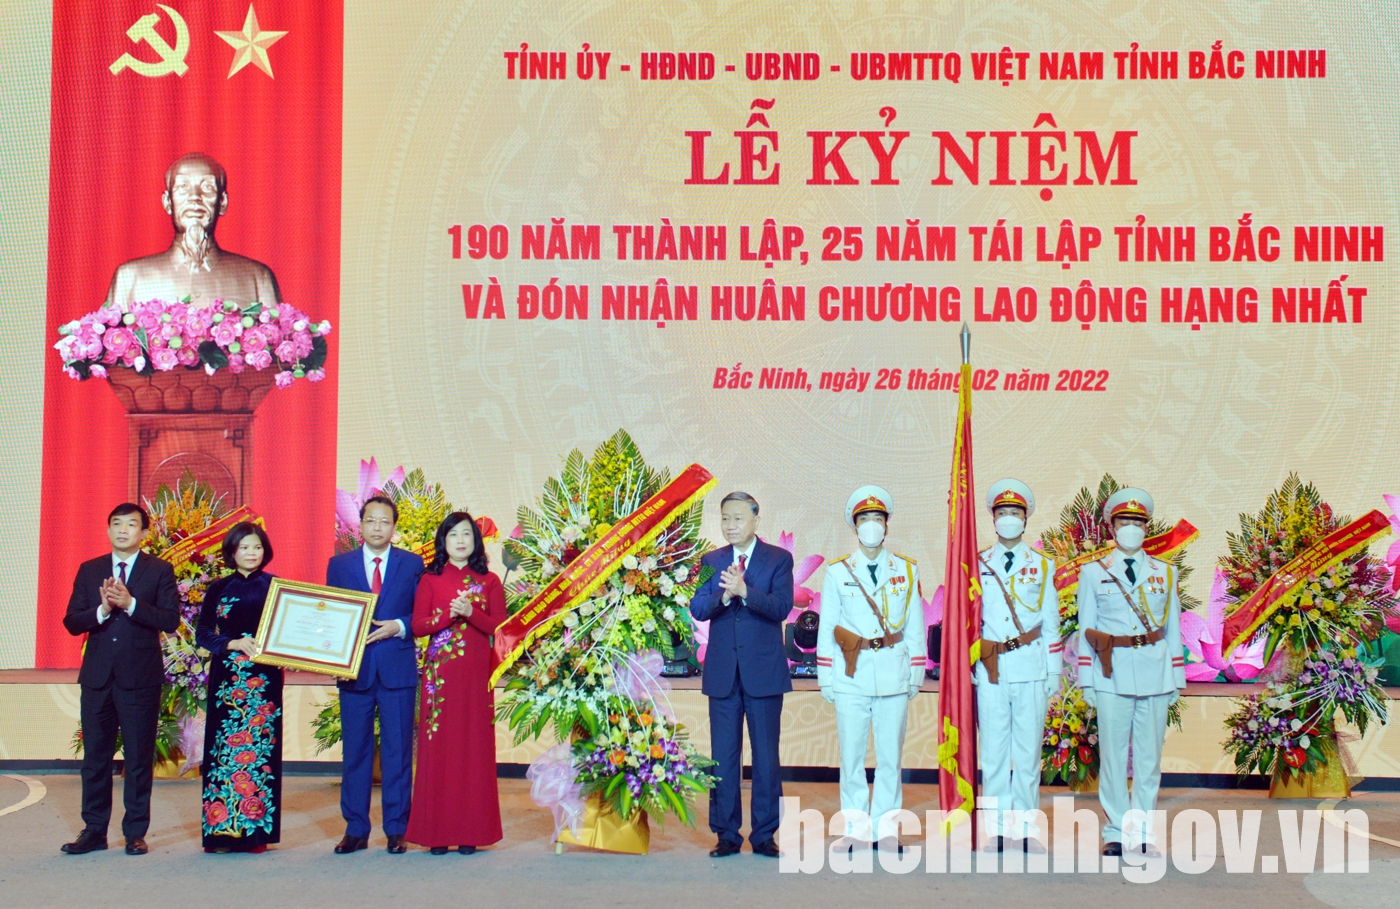 Lễ kỷ niệm 190 năm thành lập tỉnh, 25 năm tái lập tỉnh Bắc Ninh